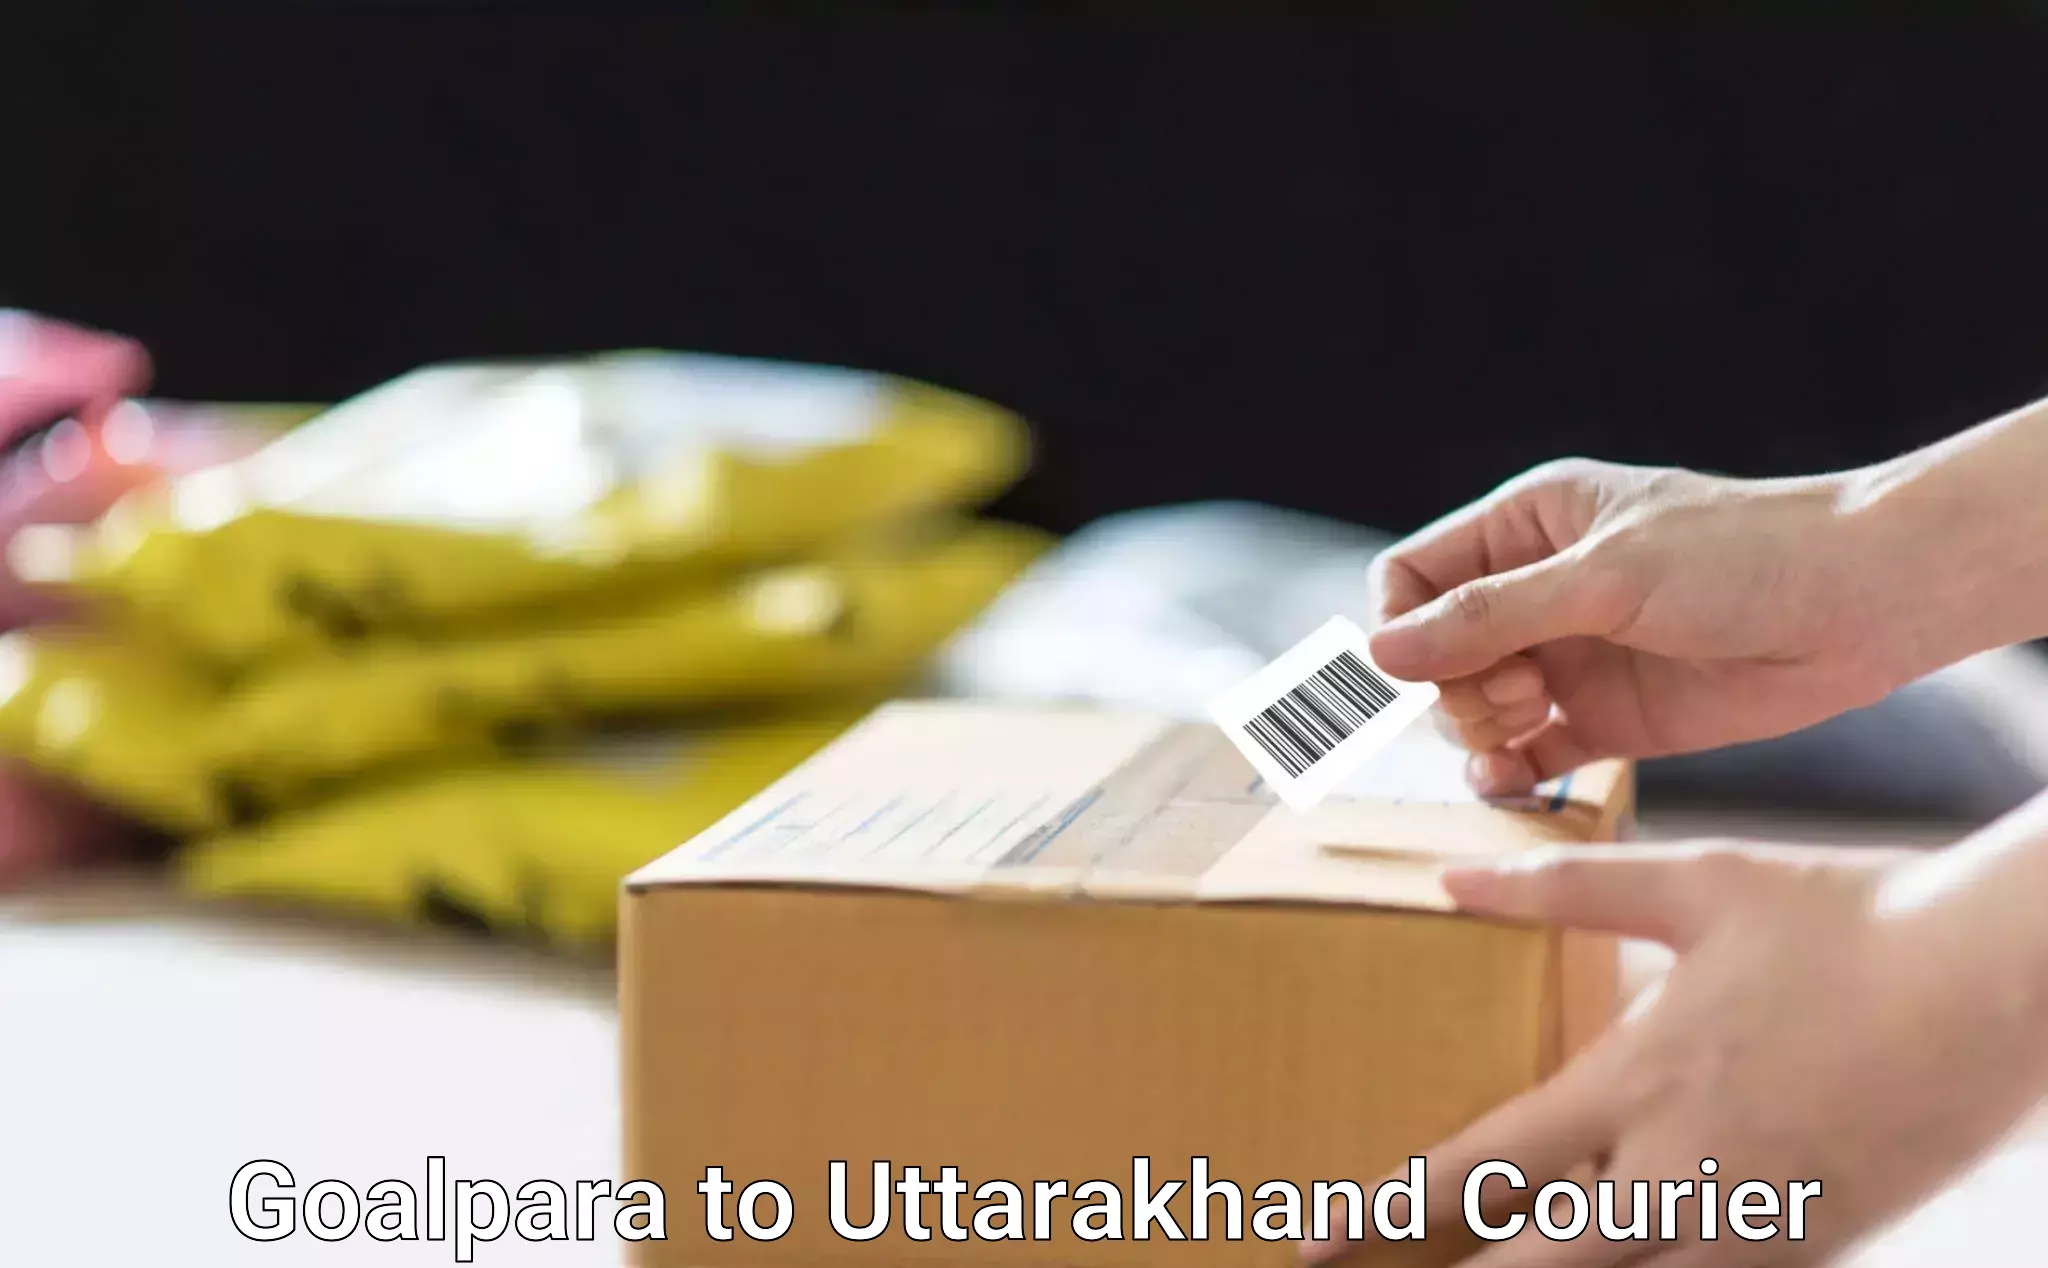 Fast parcel dispatch Goalpara to Udham Singh Nagar